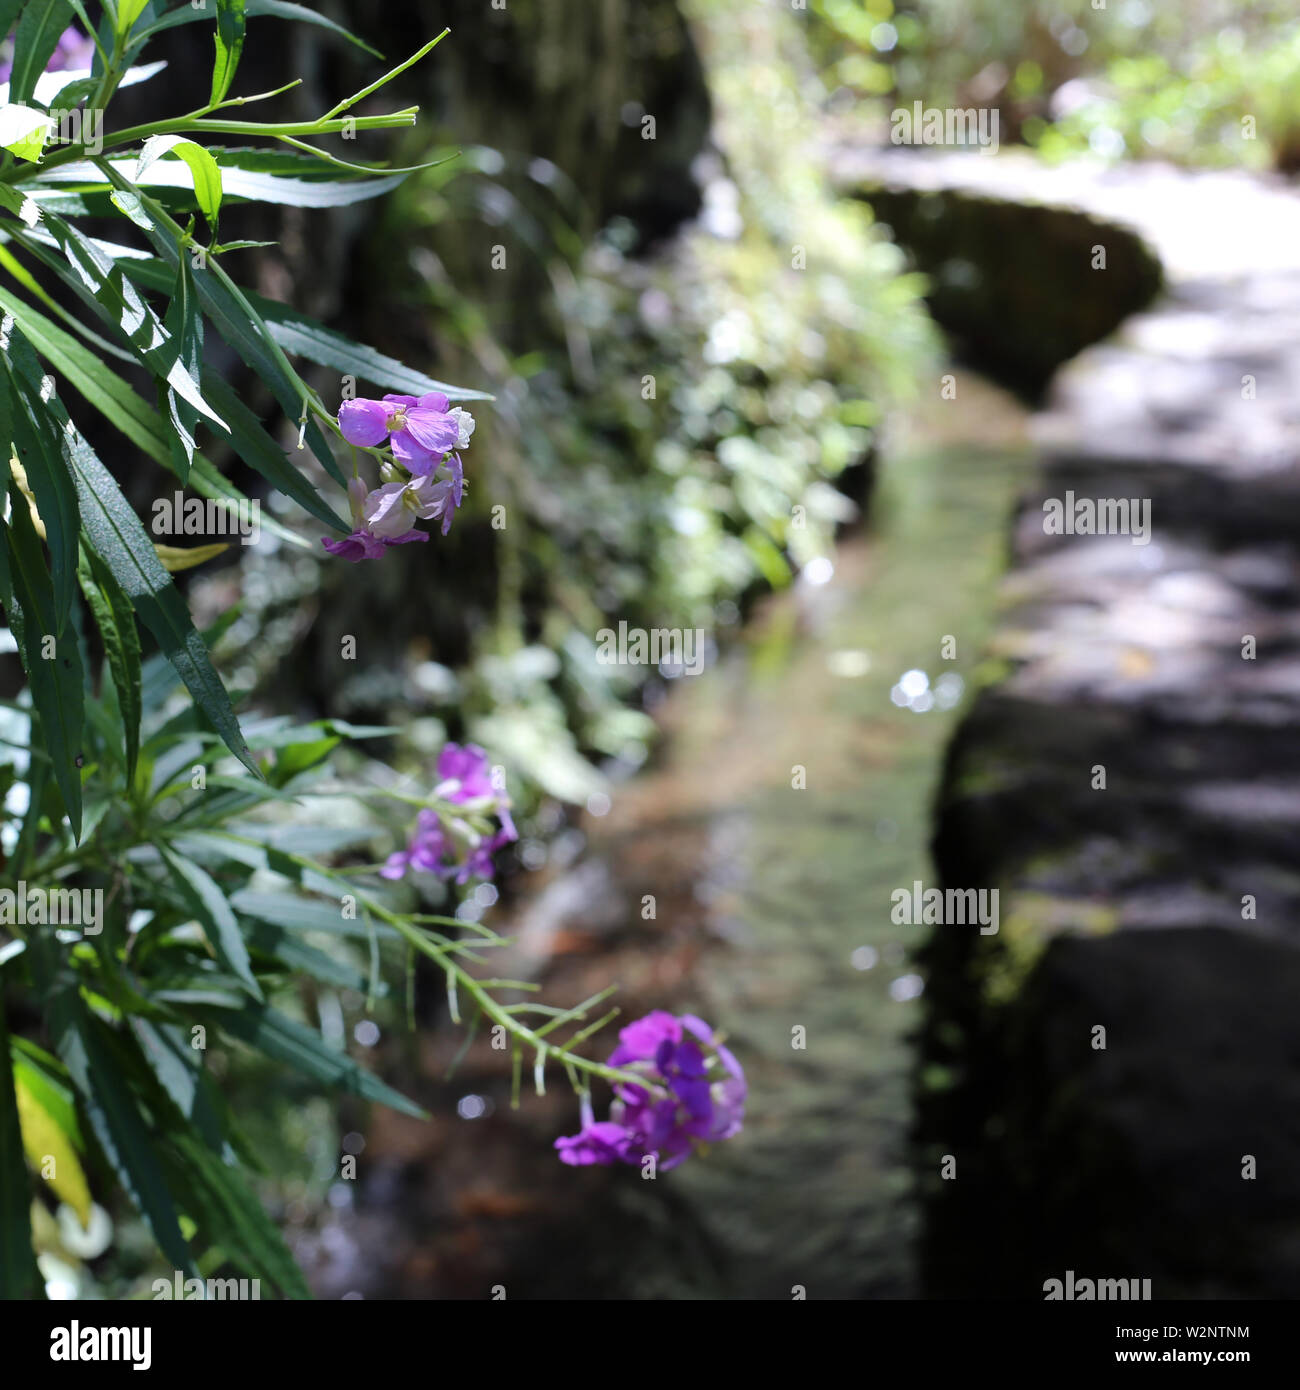 Piccola e bella fiori viola cresce al di sopra di una levada a Madeira, Portogallo. l'acqua che scorre verso il basso la Levada. Immagine a colori. Foto Stock